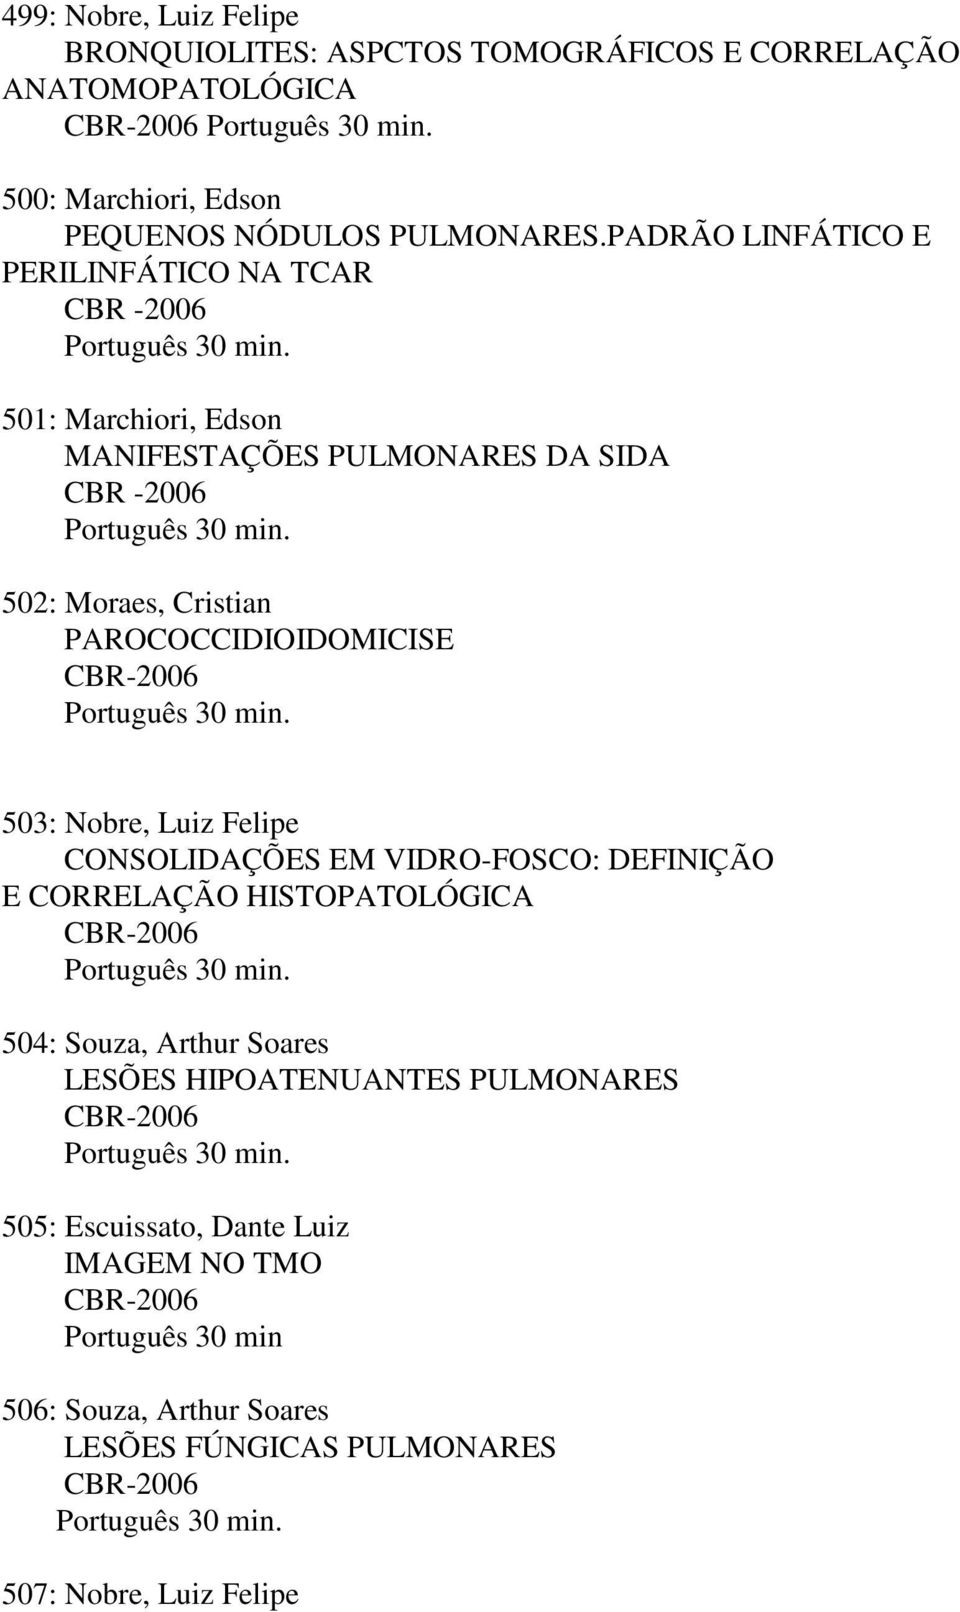 502: Moraes, Cristian PAROCOCCIDIOIDOMICISE CBR-2006 Português 30 min. 503: Nobre, Luiz Felipe CONSOLIDAÇÕES EM VIDRO-FOSCO: DEFINIÇÃO E CORRELAÇÃO HISTOPATOLÓGICA CBR-2006 Português 30 min.